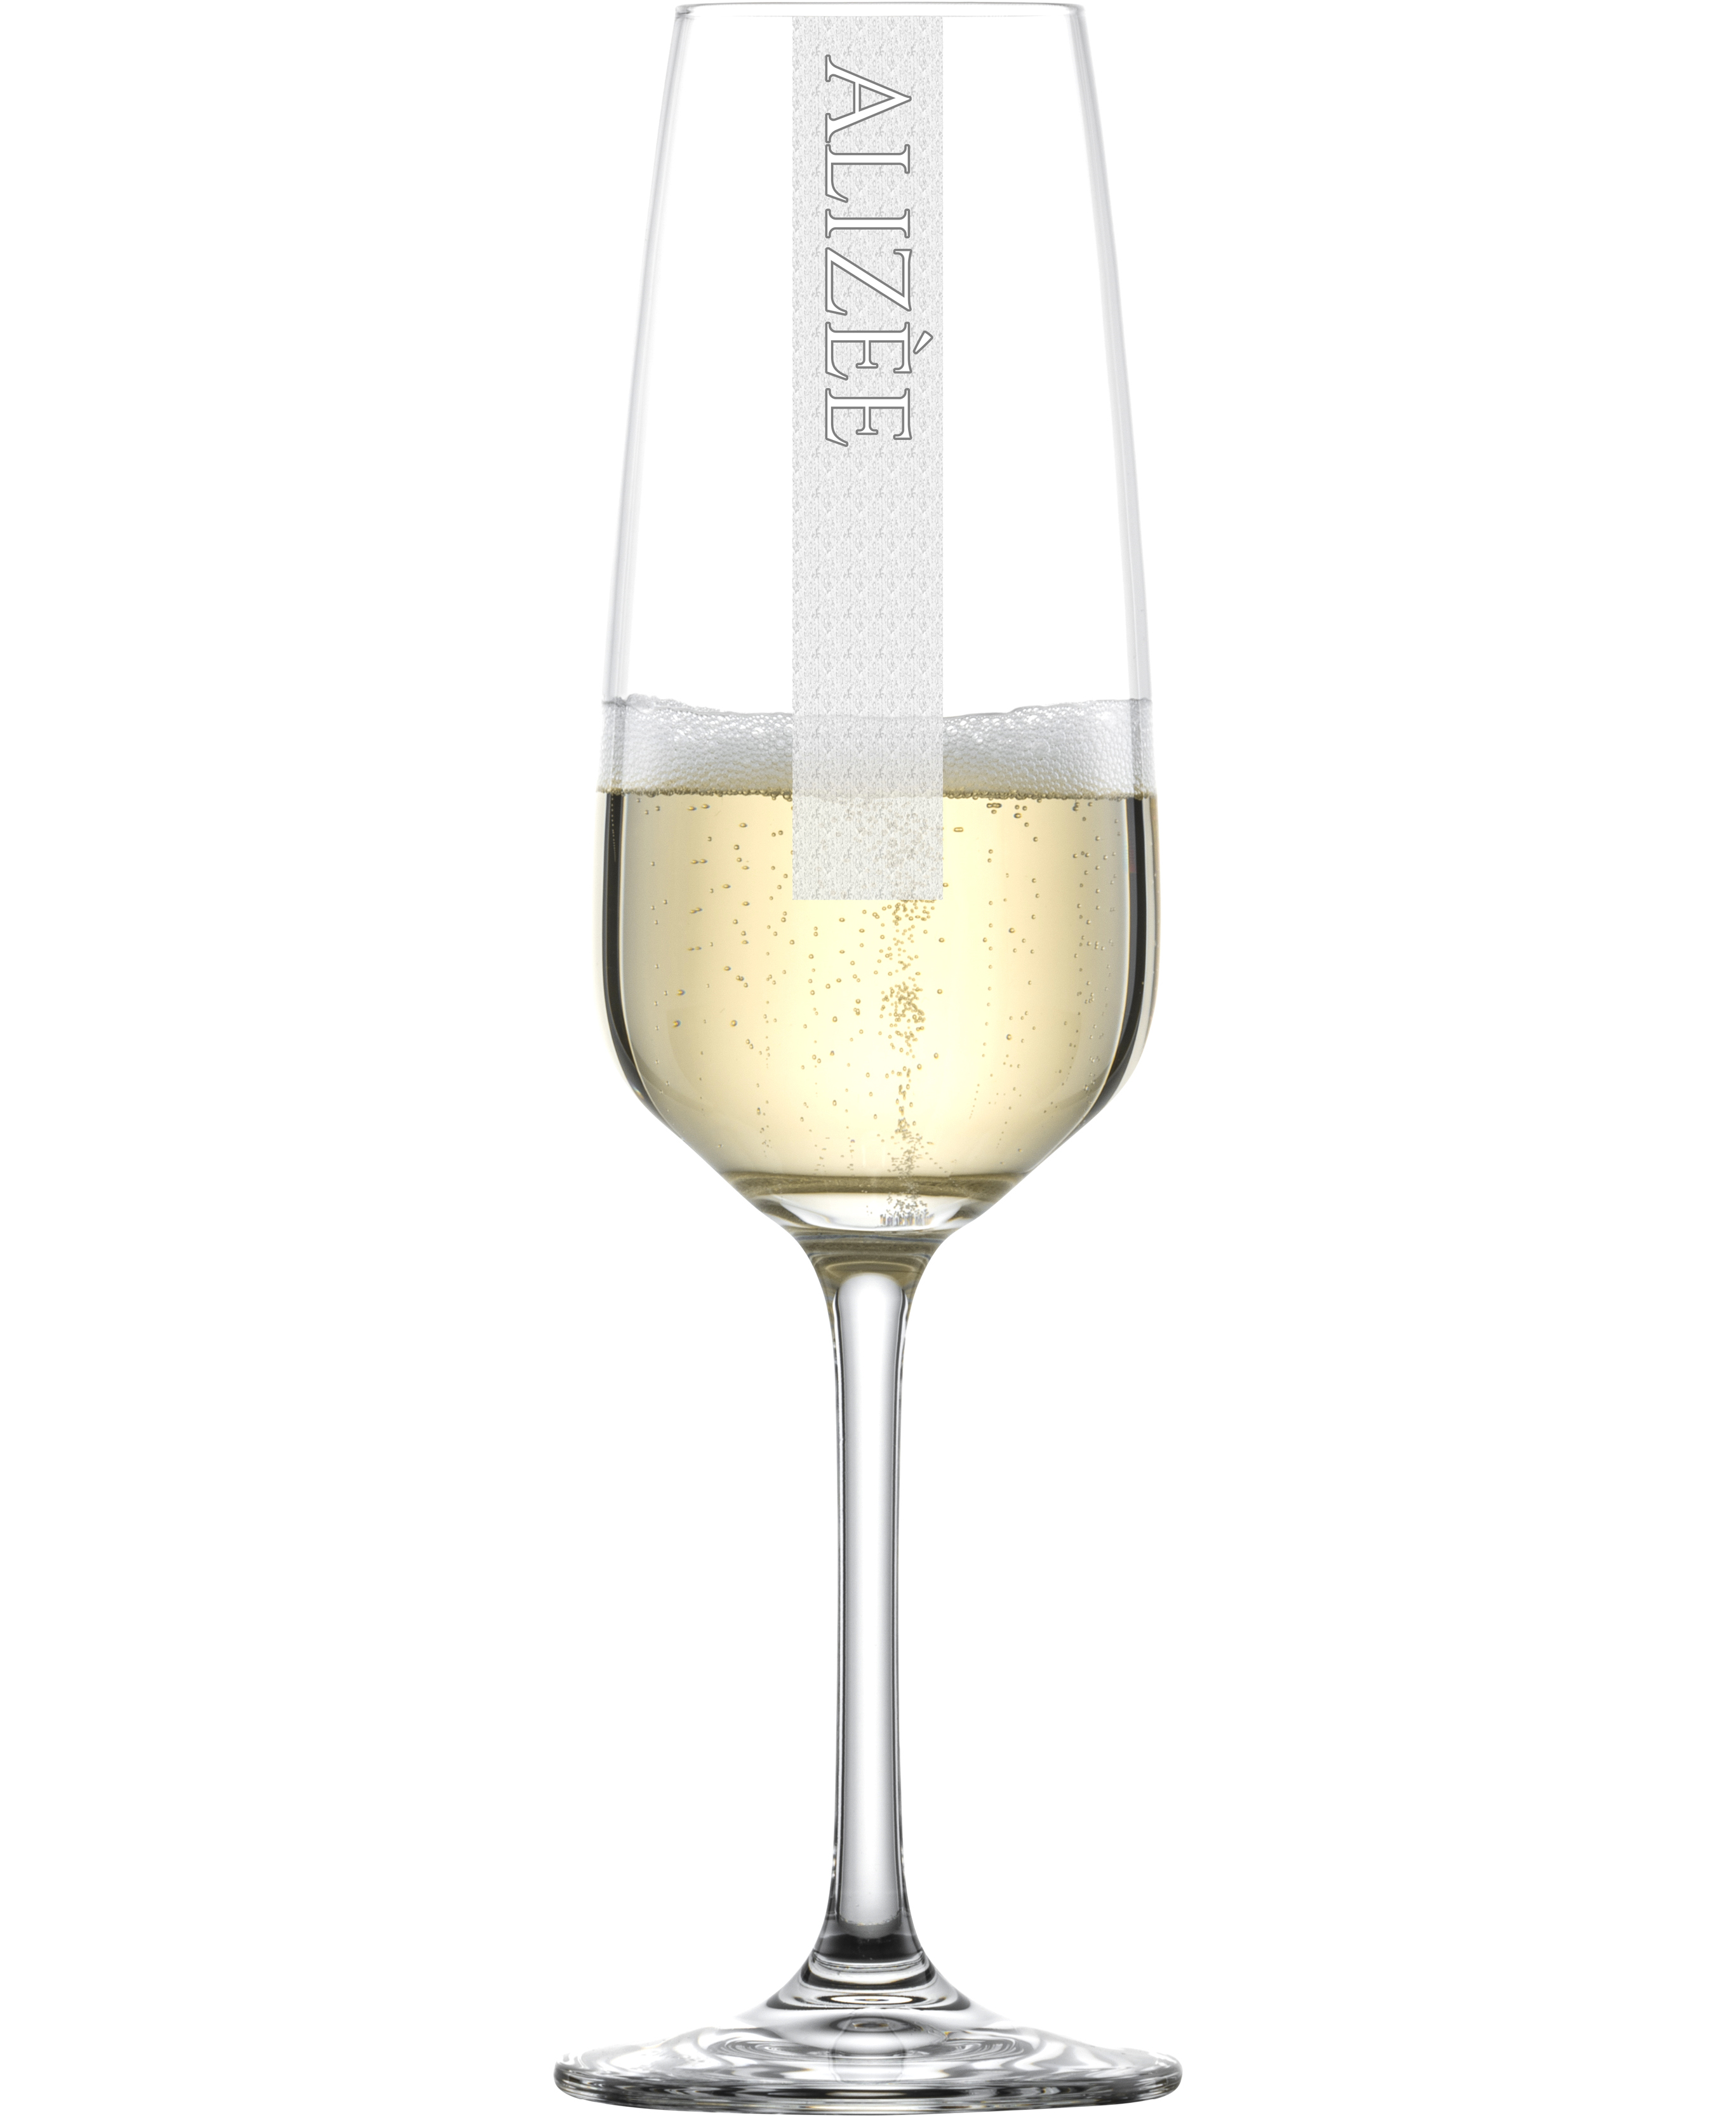 23 Champagnerglas Sektglas weiß mit Ihrer persönlichen Gravur edel und nobel 